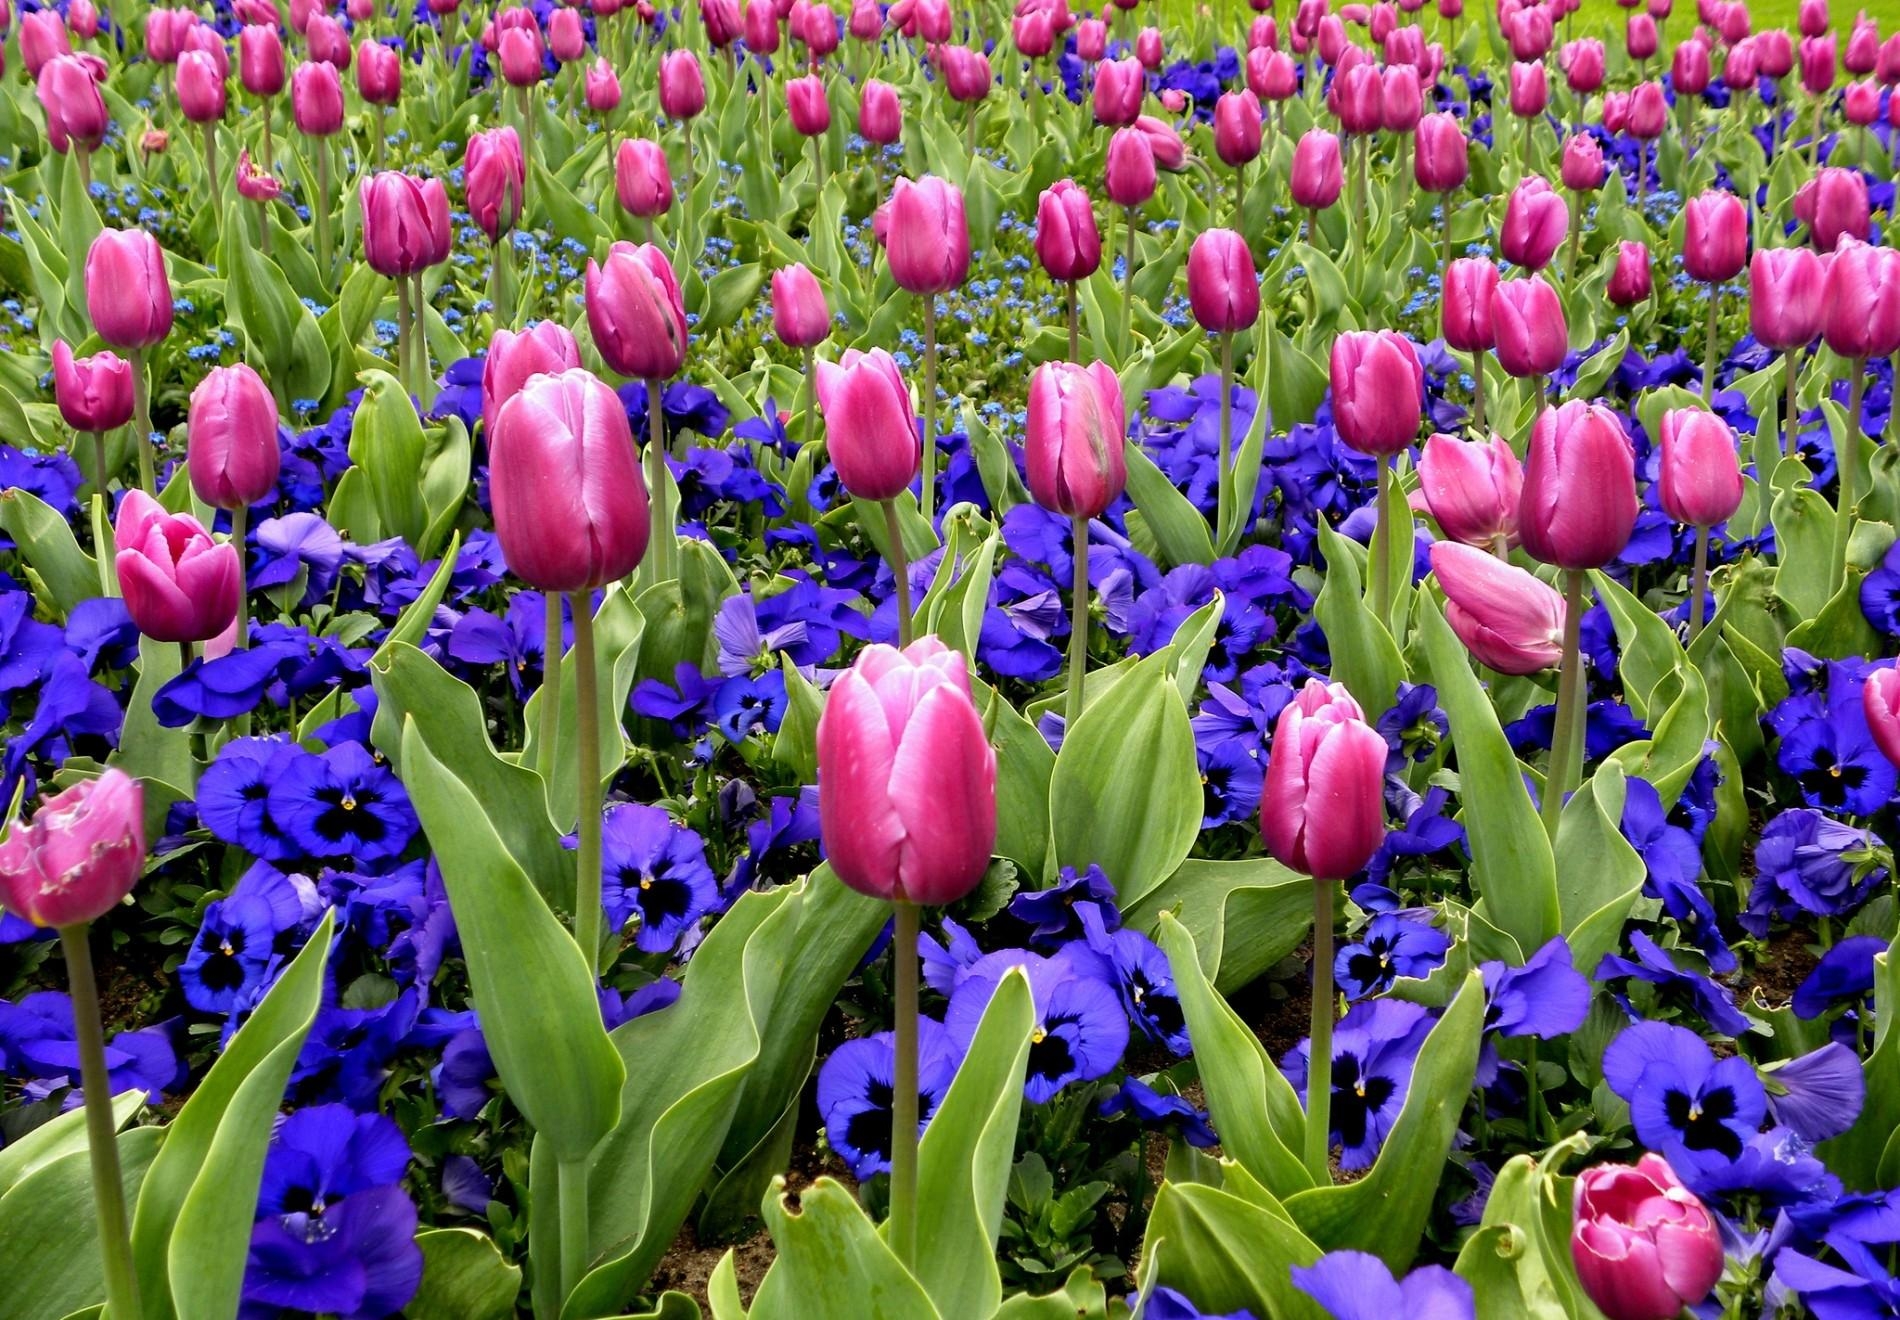 flower bed, flowers, pansies, tulips, flowerbed, spring